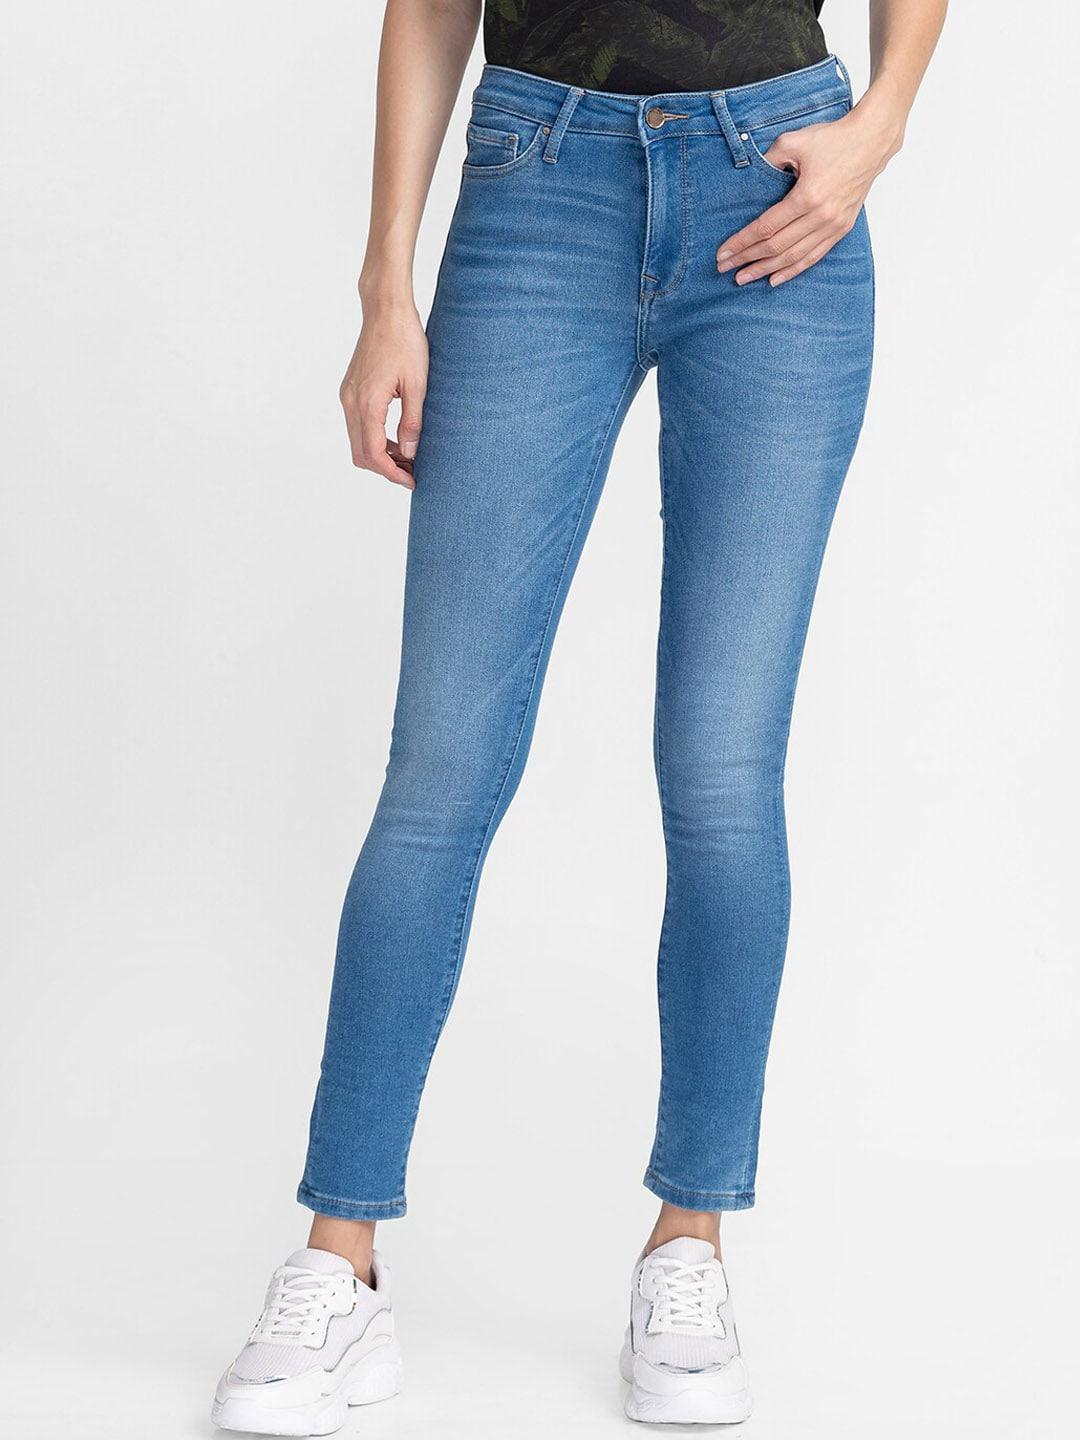 spykar-women-blue-skinny-fit-light-fade-jeans